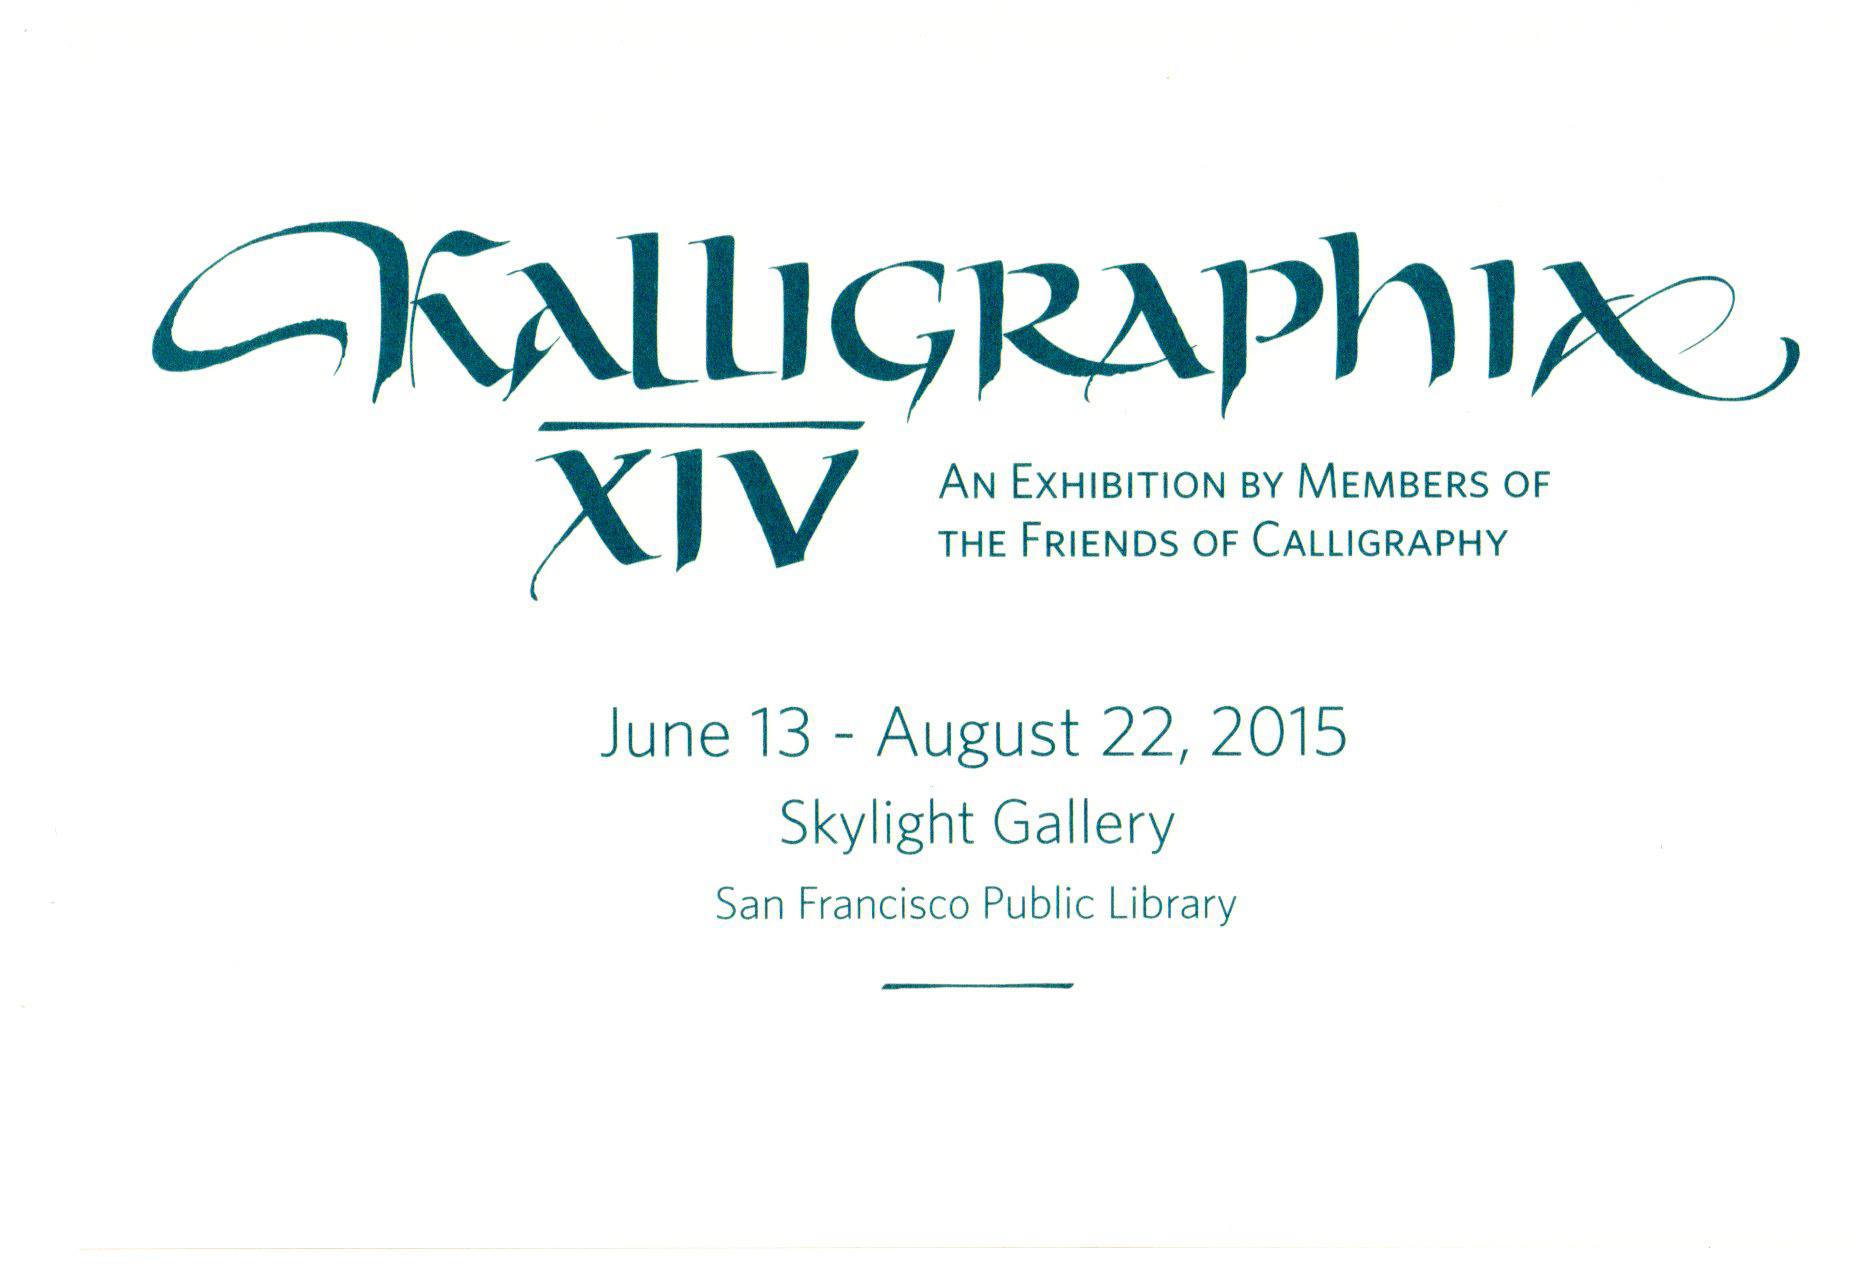 Kalligraphia XIV